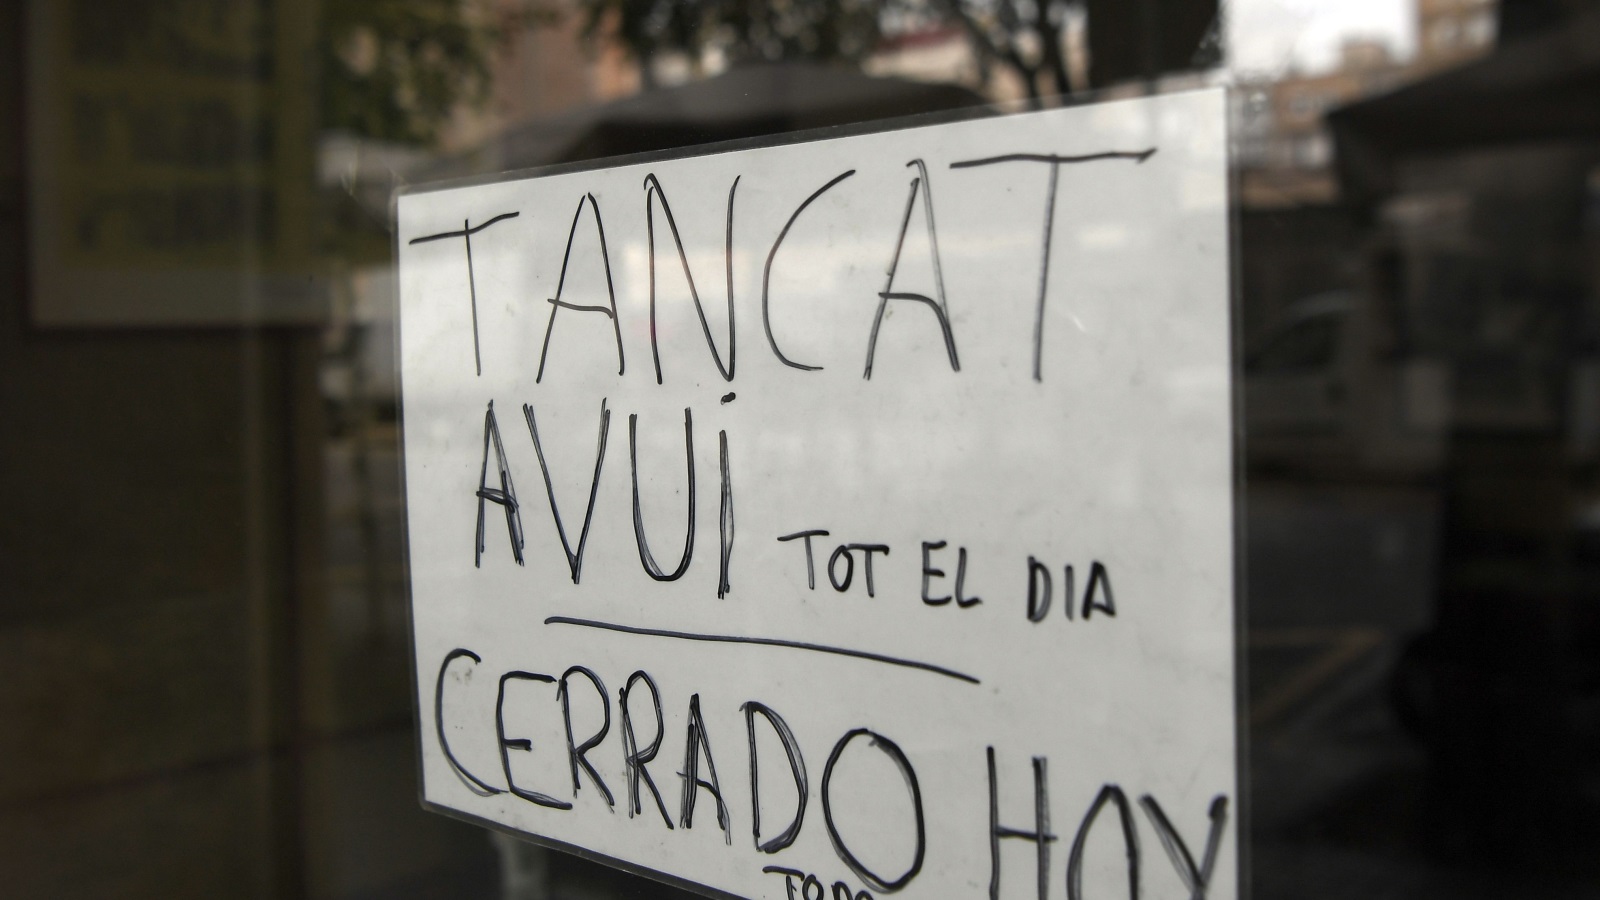 محلات ببرشلونة تعلن باللغتين الكتالونية والإسبانية أنها مغلقة كامل اليوم بسبب الإضراب العام (غيتي)